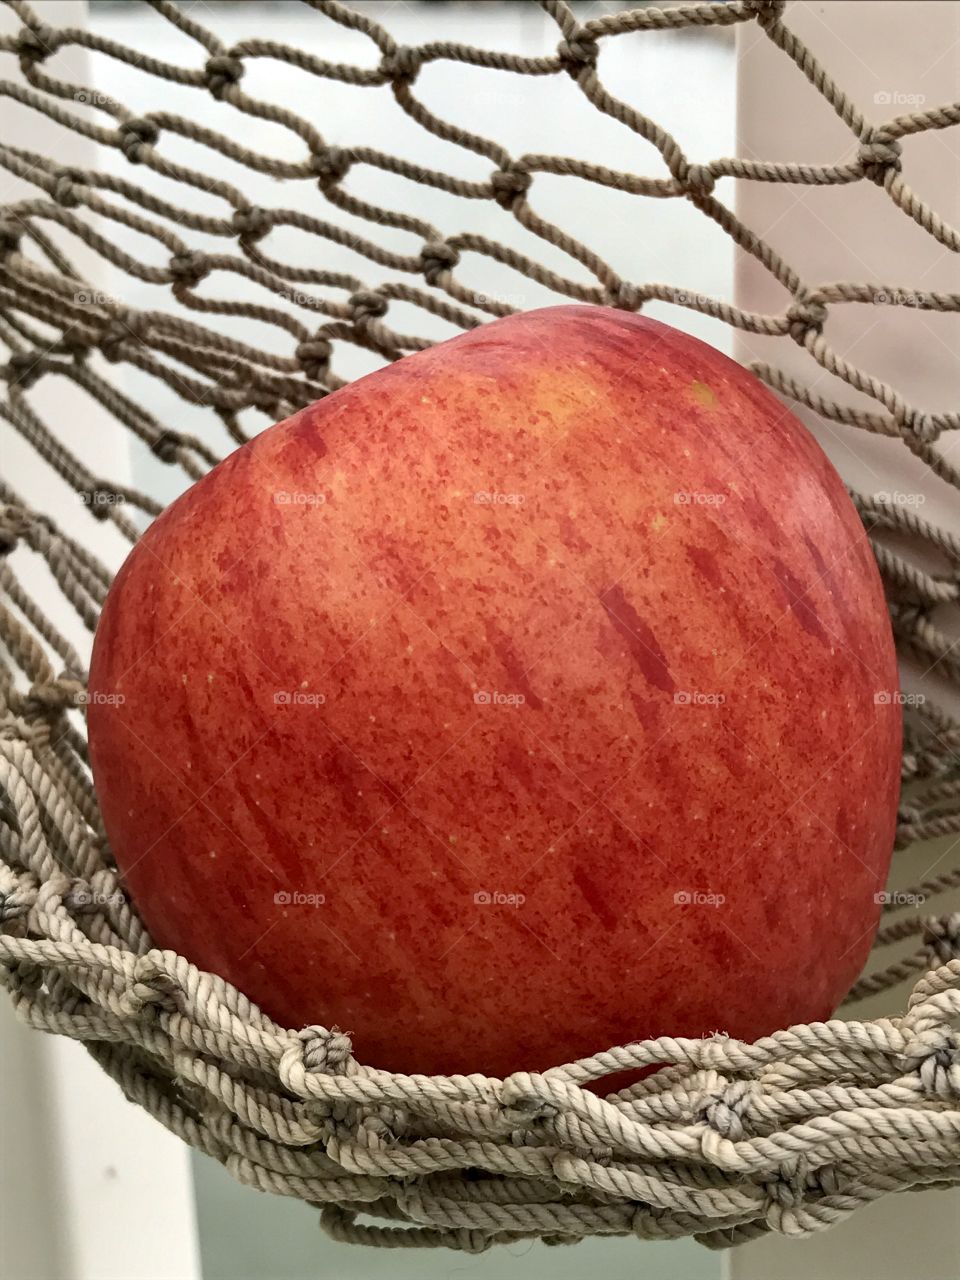 Apple in a net